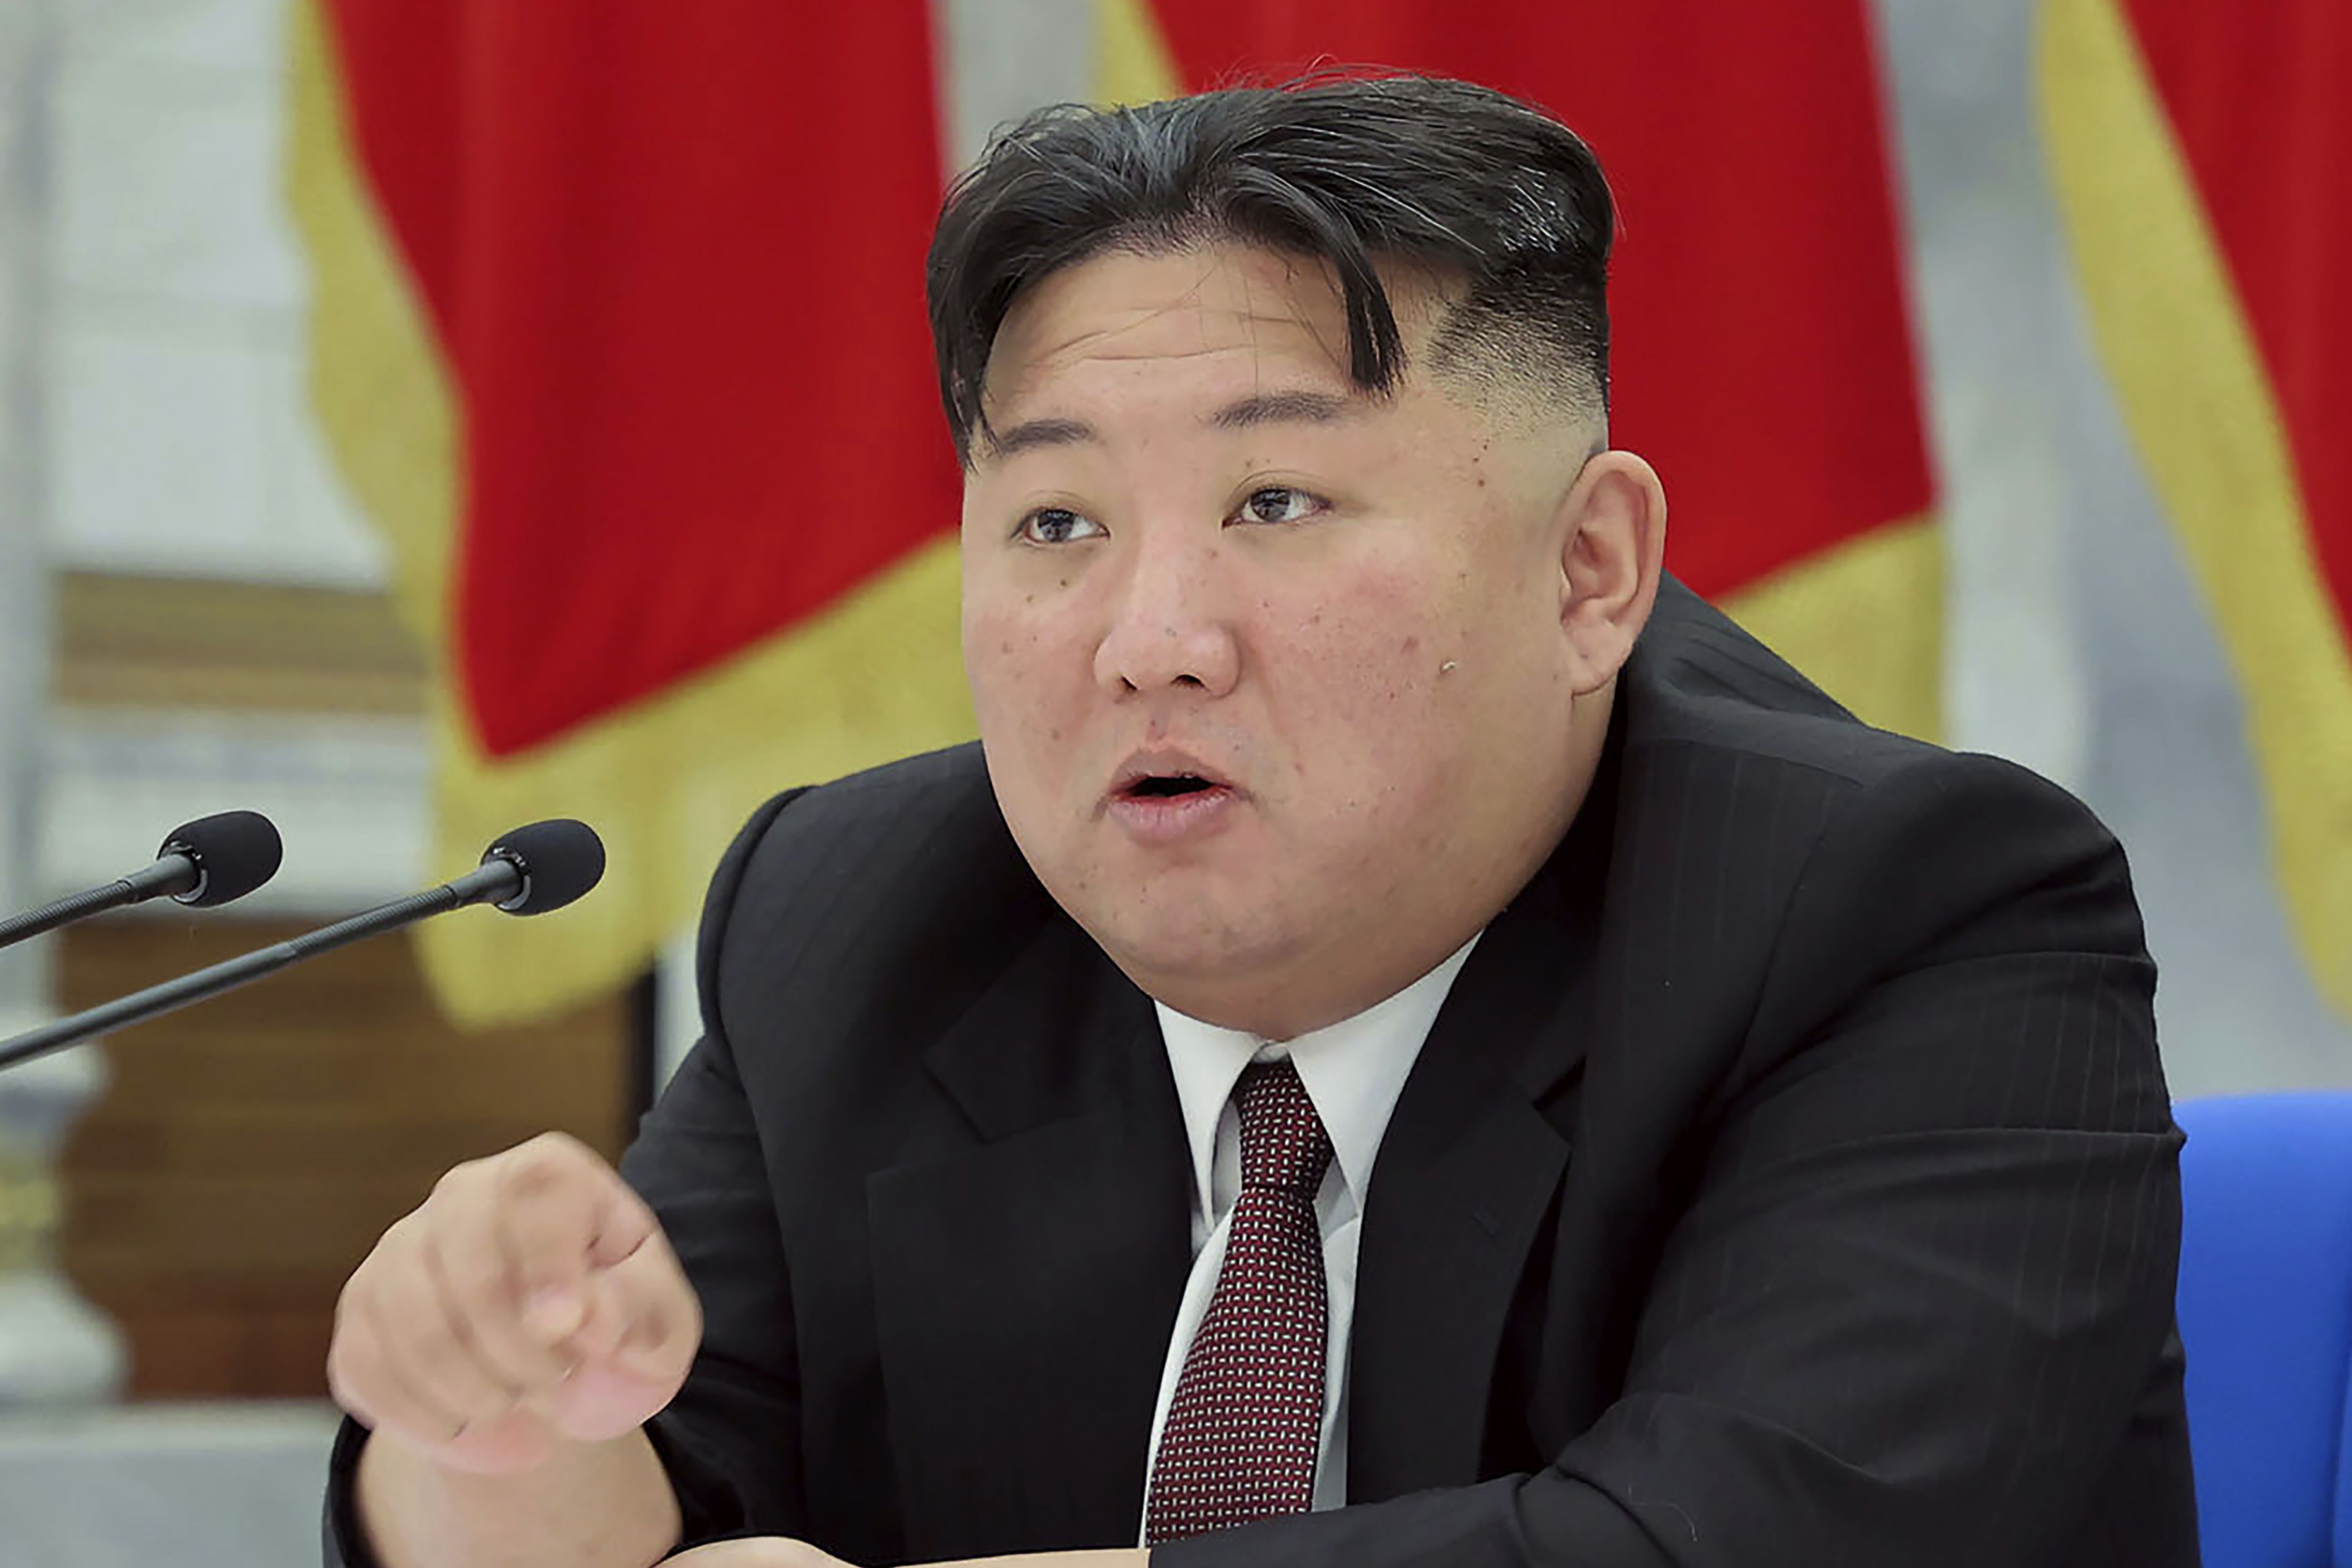 Kim Jong Un amenaza a EU con ‘acciones más ofensivas’ tras realizar prueba de un misil